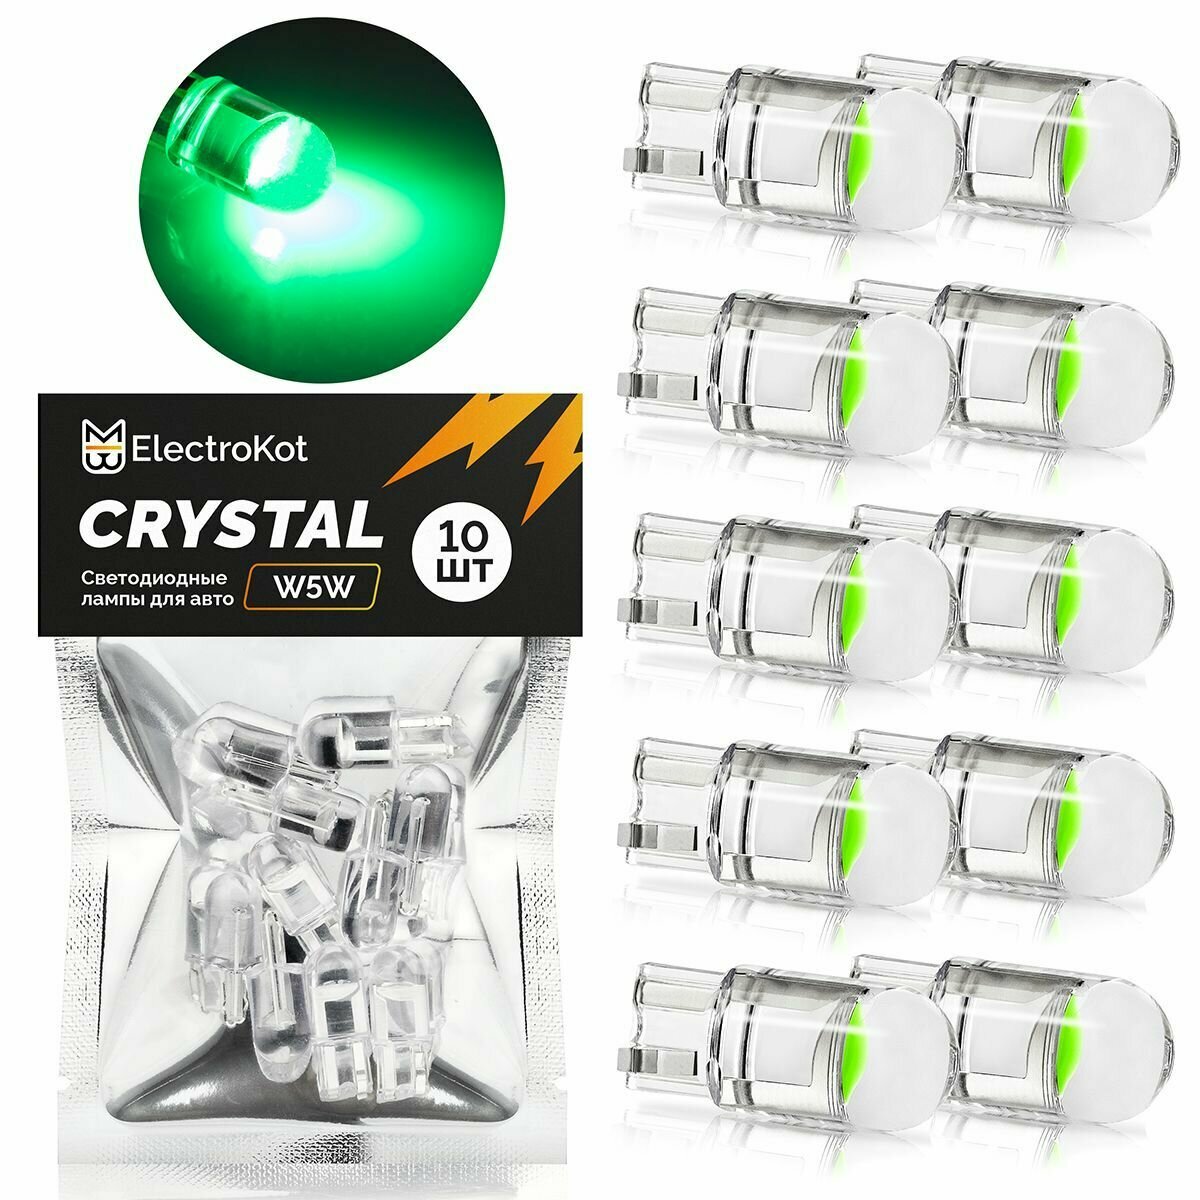 Светодиодная лампа для авто ElectroKot Crystal T10 W5W зеленый свет 10 шт в подсветку салона/багажника/номерного знака